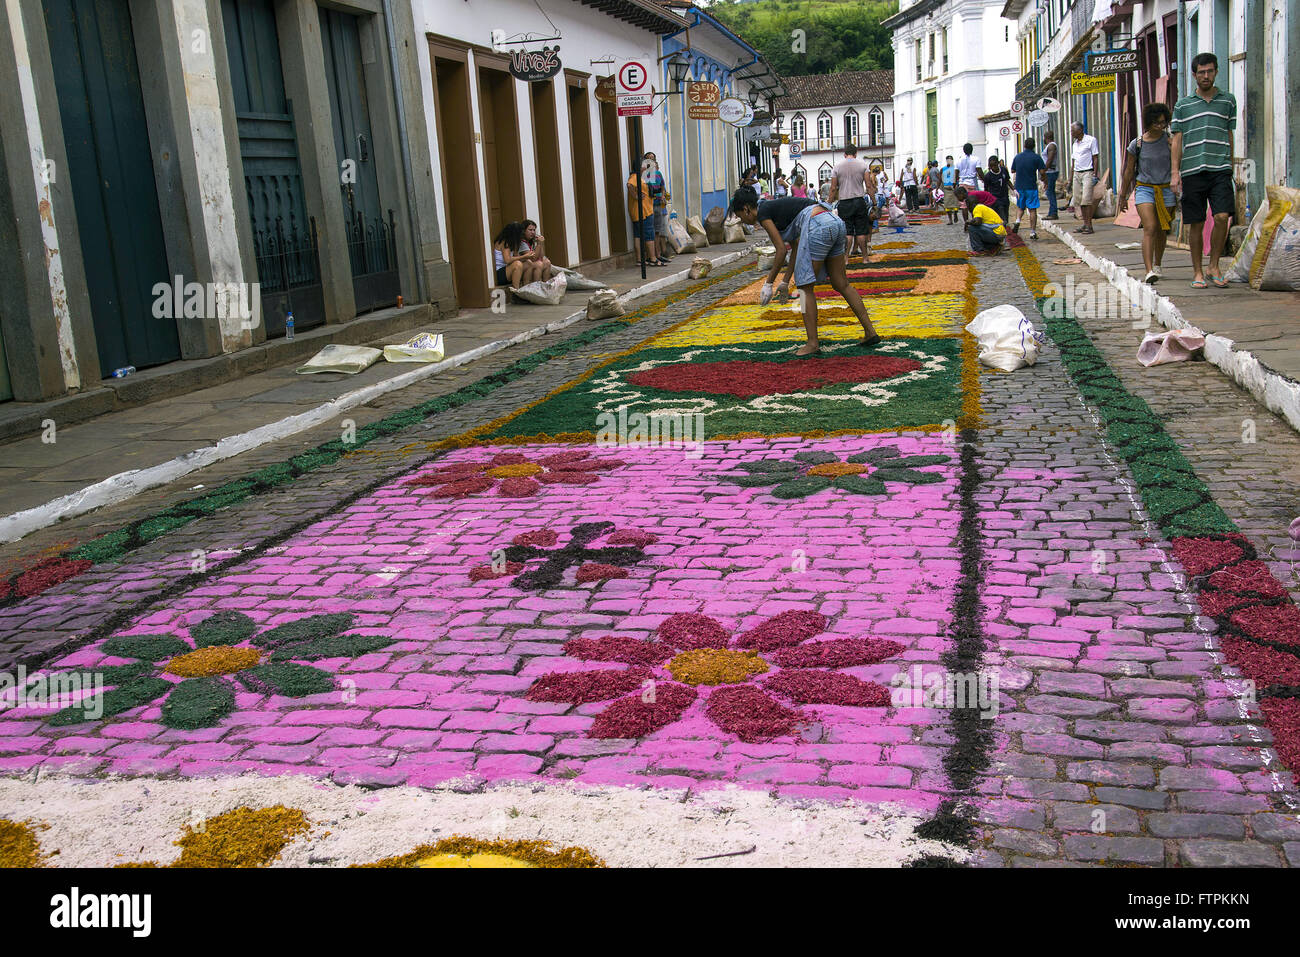 Fieis decorando rua de serragem com tapetes para colorida procissao da Semana Santa Banque D'Images